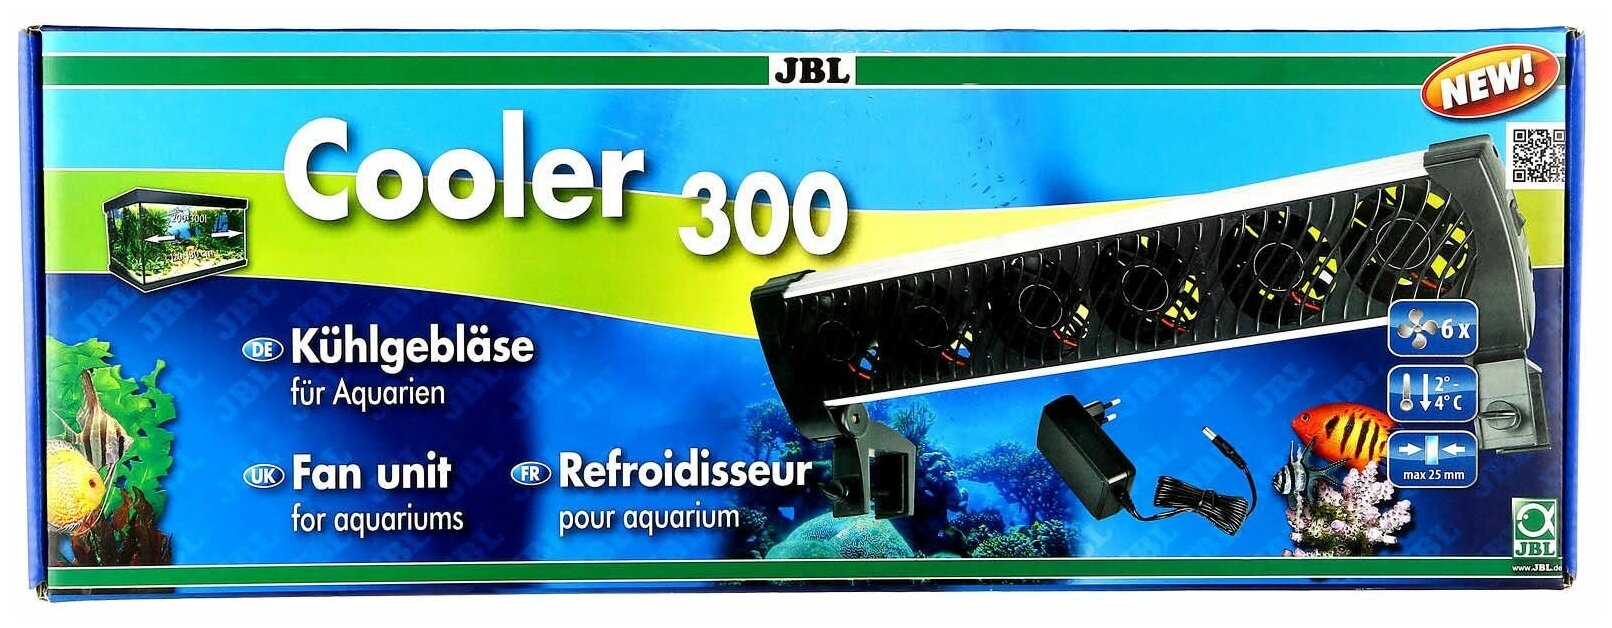 JBL Cooler 300 — купить в интернет-магазине низкой цене Яндекс Маркете